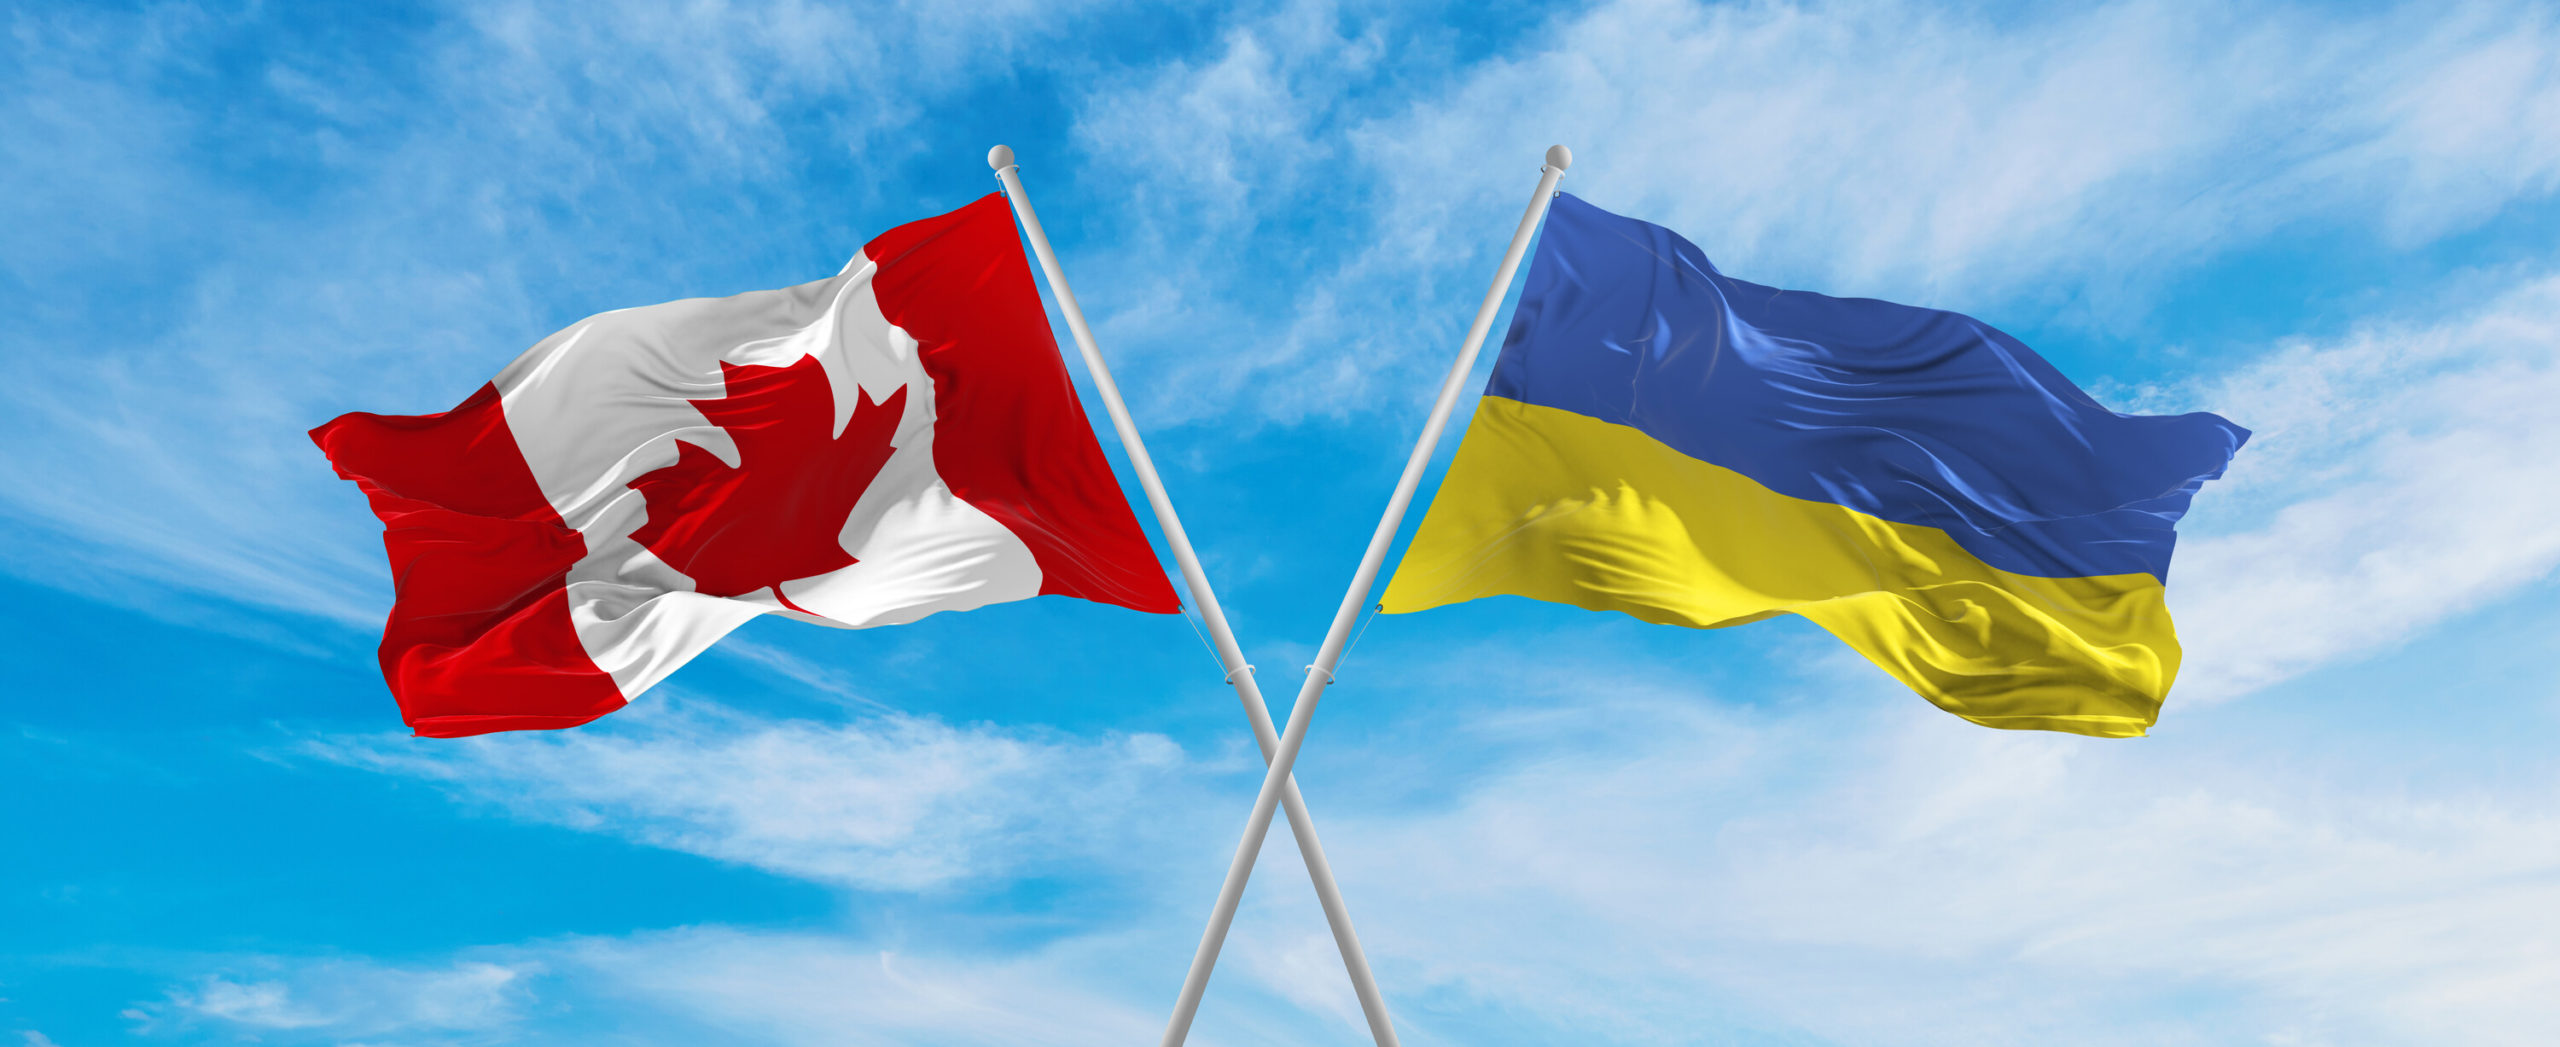 Canada’s top politicians visit Ukraine